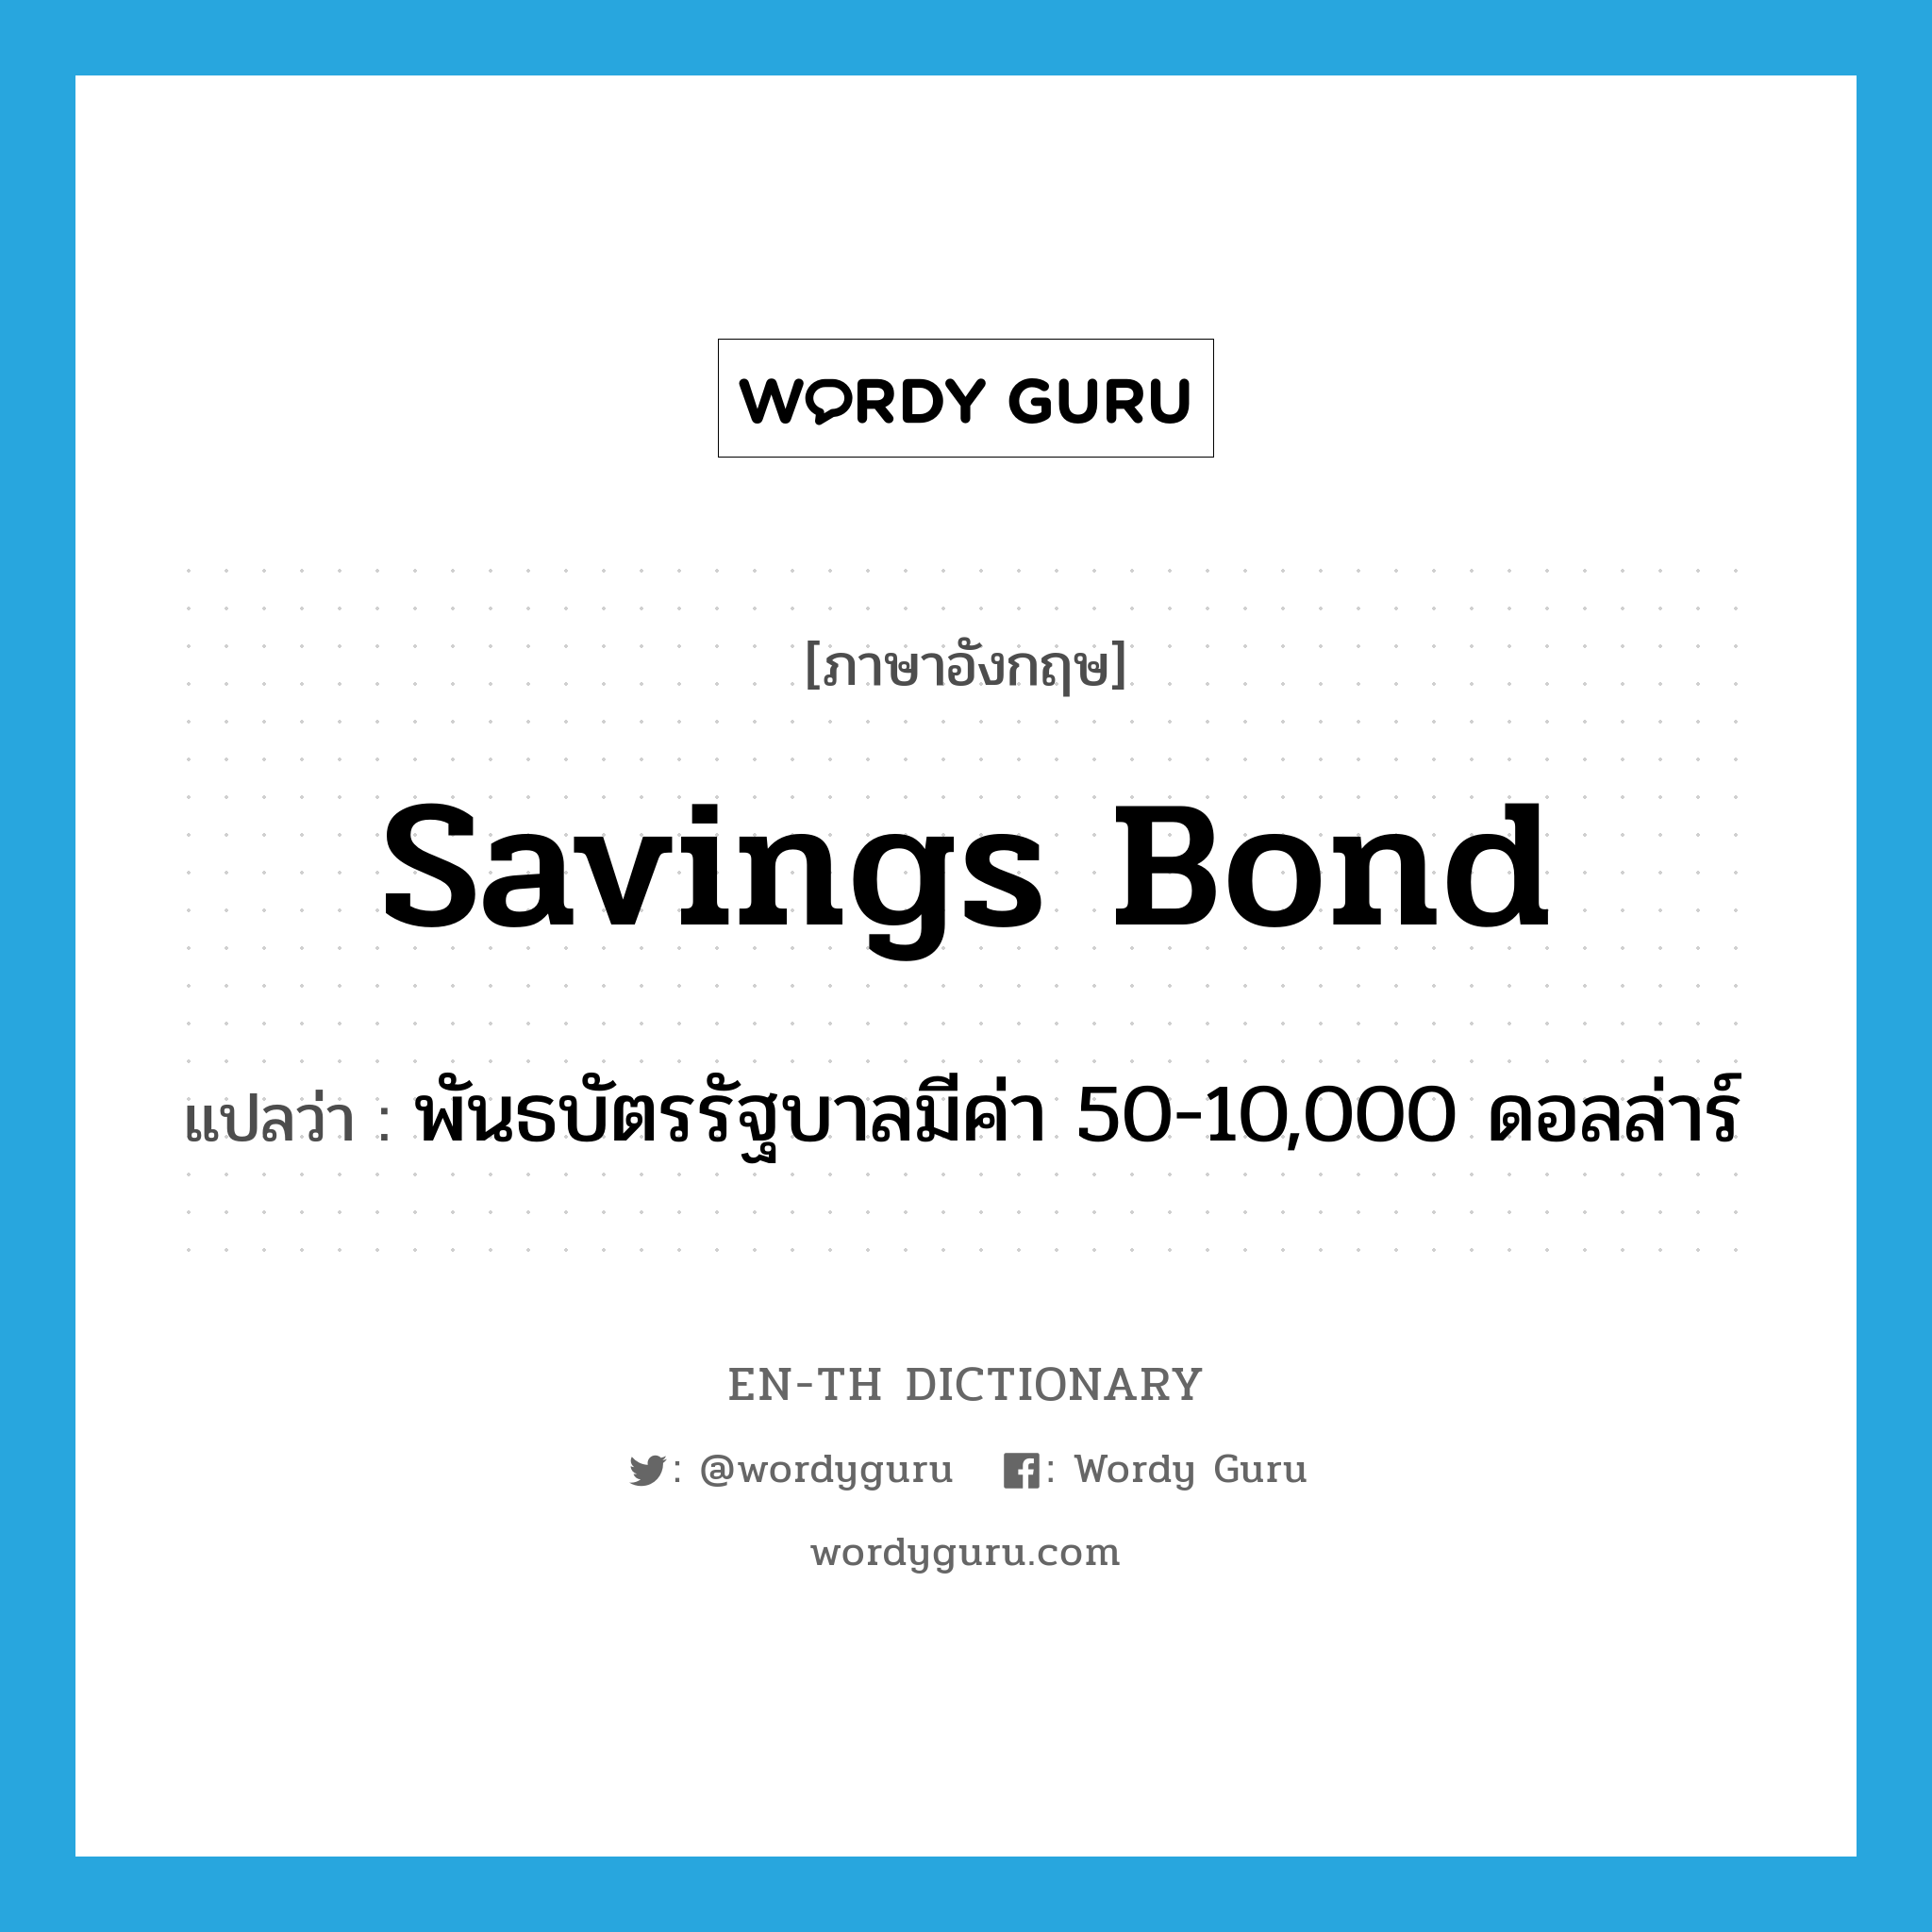 savings bond แปลว่า?, คำศัพท์ภาษาอังกฤษ savings bond แปลว่า พันธบัตรรัฐบาลมีค่า 50-10,000 ดอลล่าร์ ประเภท N หมวด N